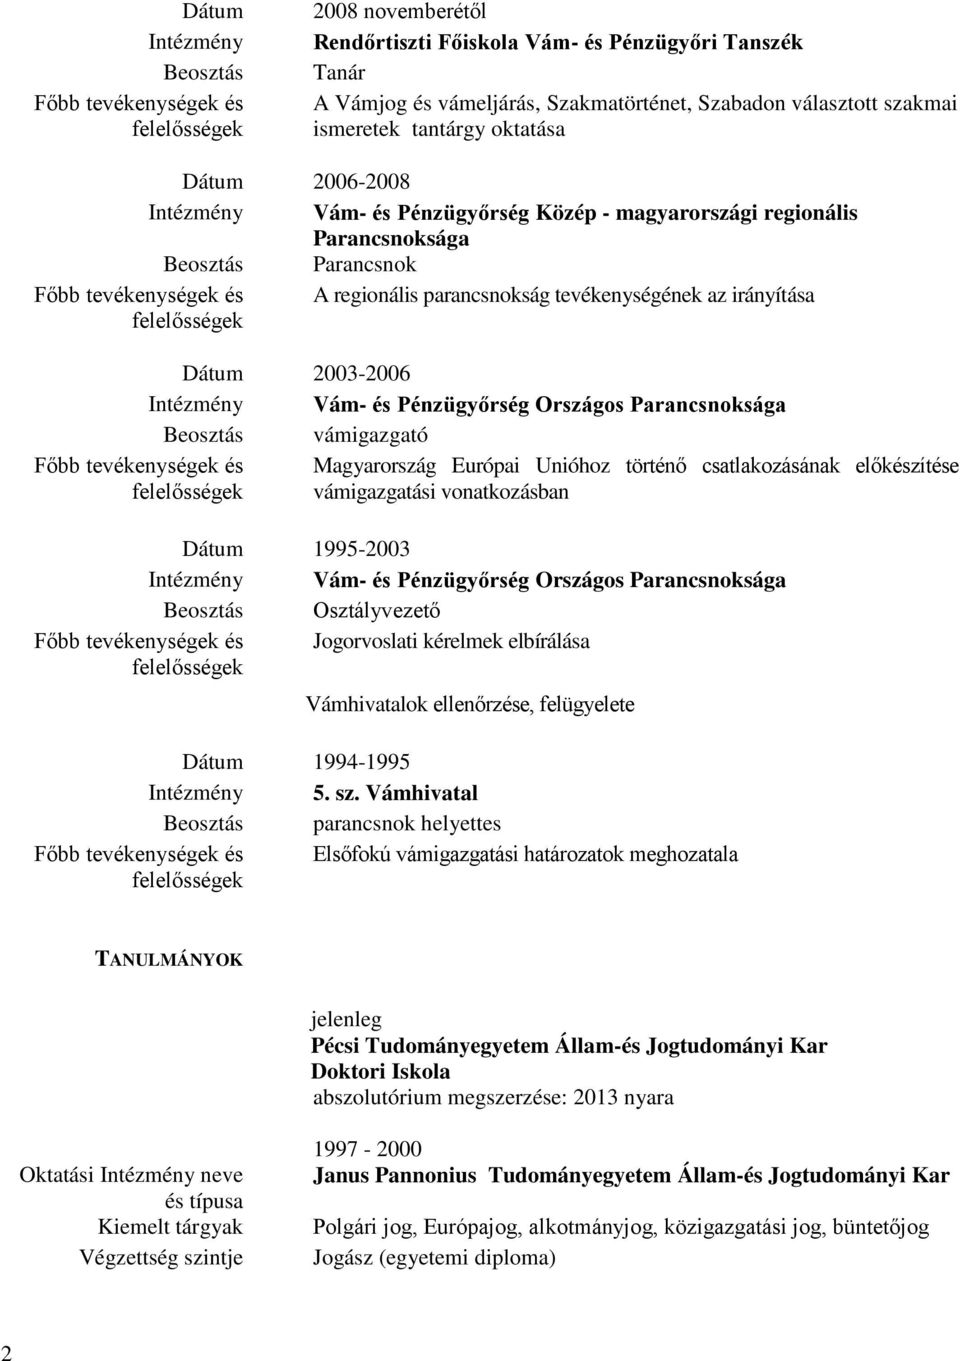 Pénzügyőrség Országos Parancsnoksága Beosztás vámigazgató Magyarország Európai Unióhoz történő csatlakozásának előkészítése vámigazgatási vonatkozásban Dátum 1995-2003 Intézmény Vám- és Pénzügyőrség